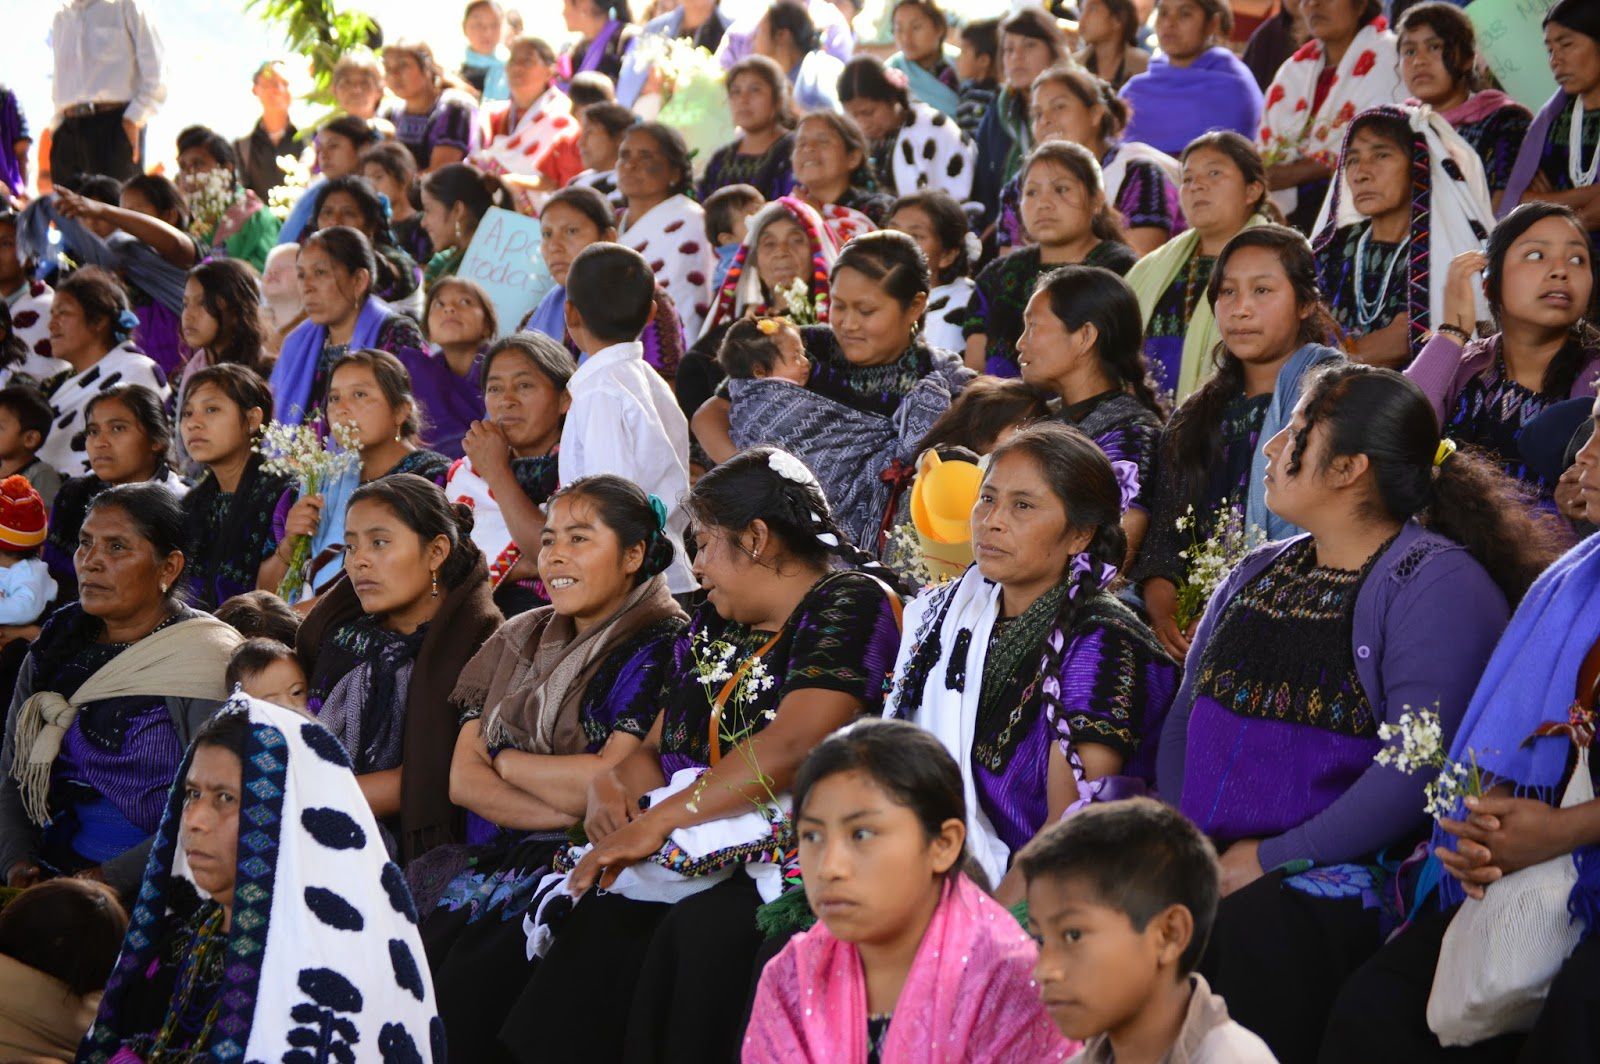 8 mars au Chiapas - Les femmes accrochent le drapeau blanc au camp militaire